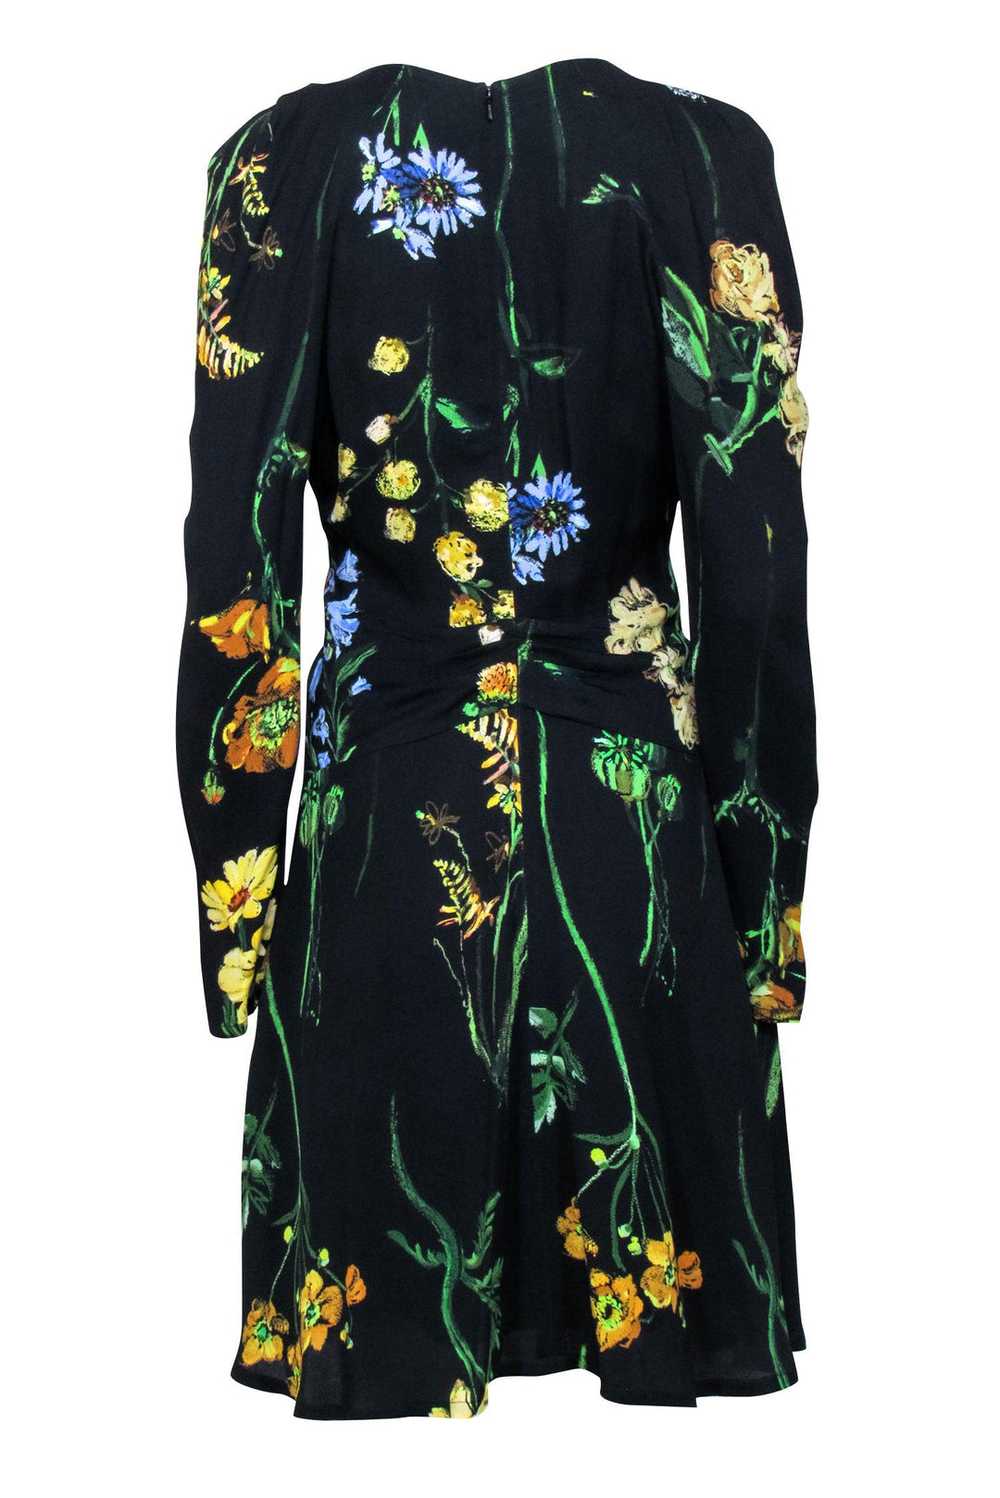 Lela Rose - Black & Multi Color Floral Print Dres… - image 3